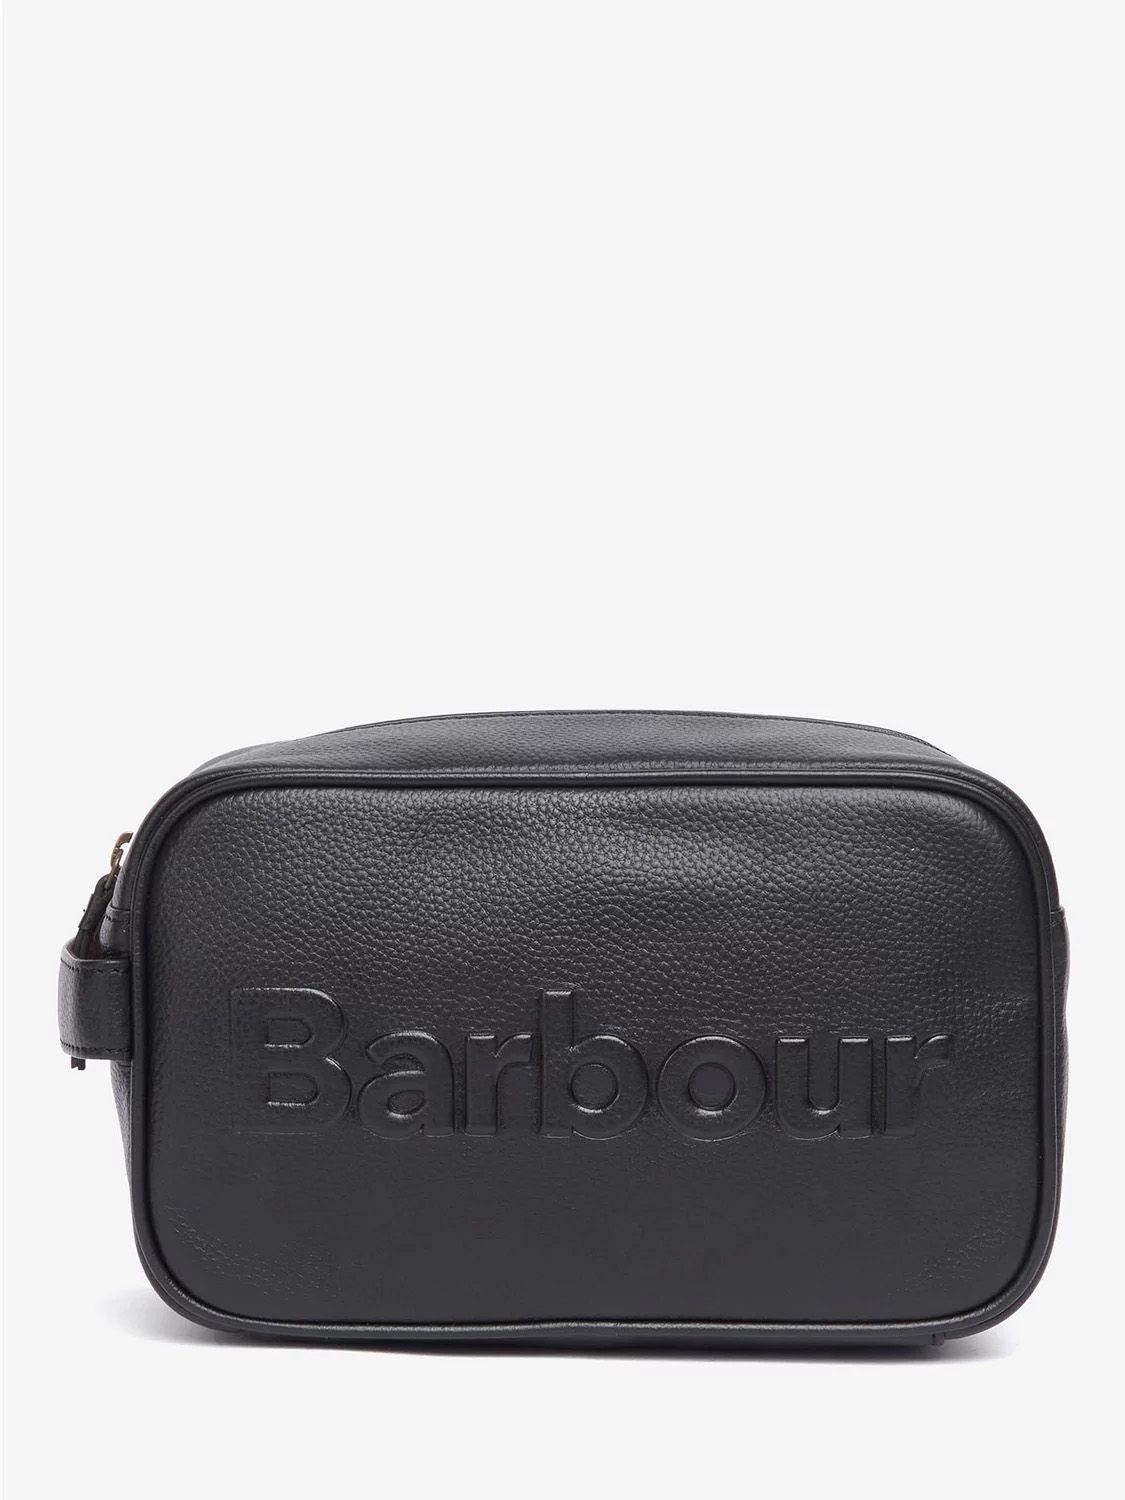 Black leather Barbour debossed logo bathroom bag